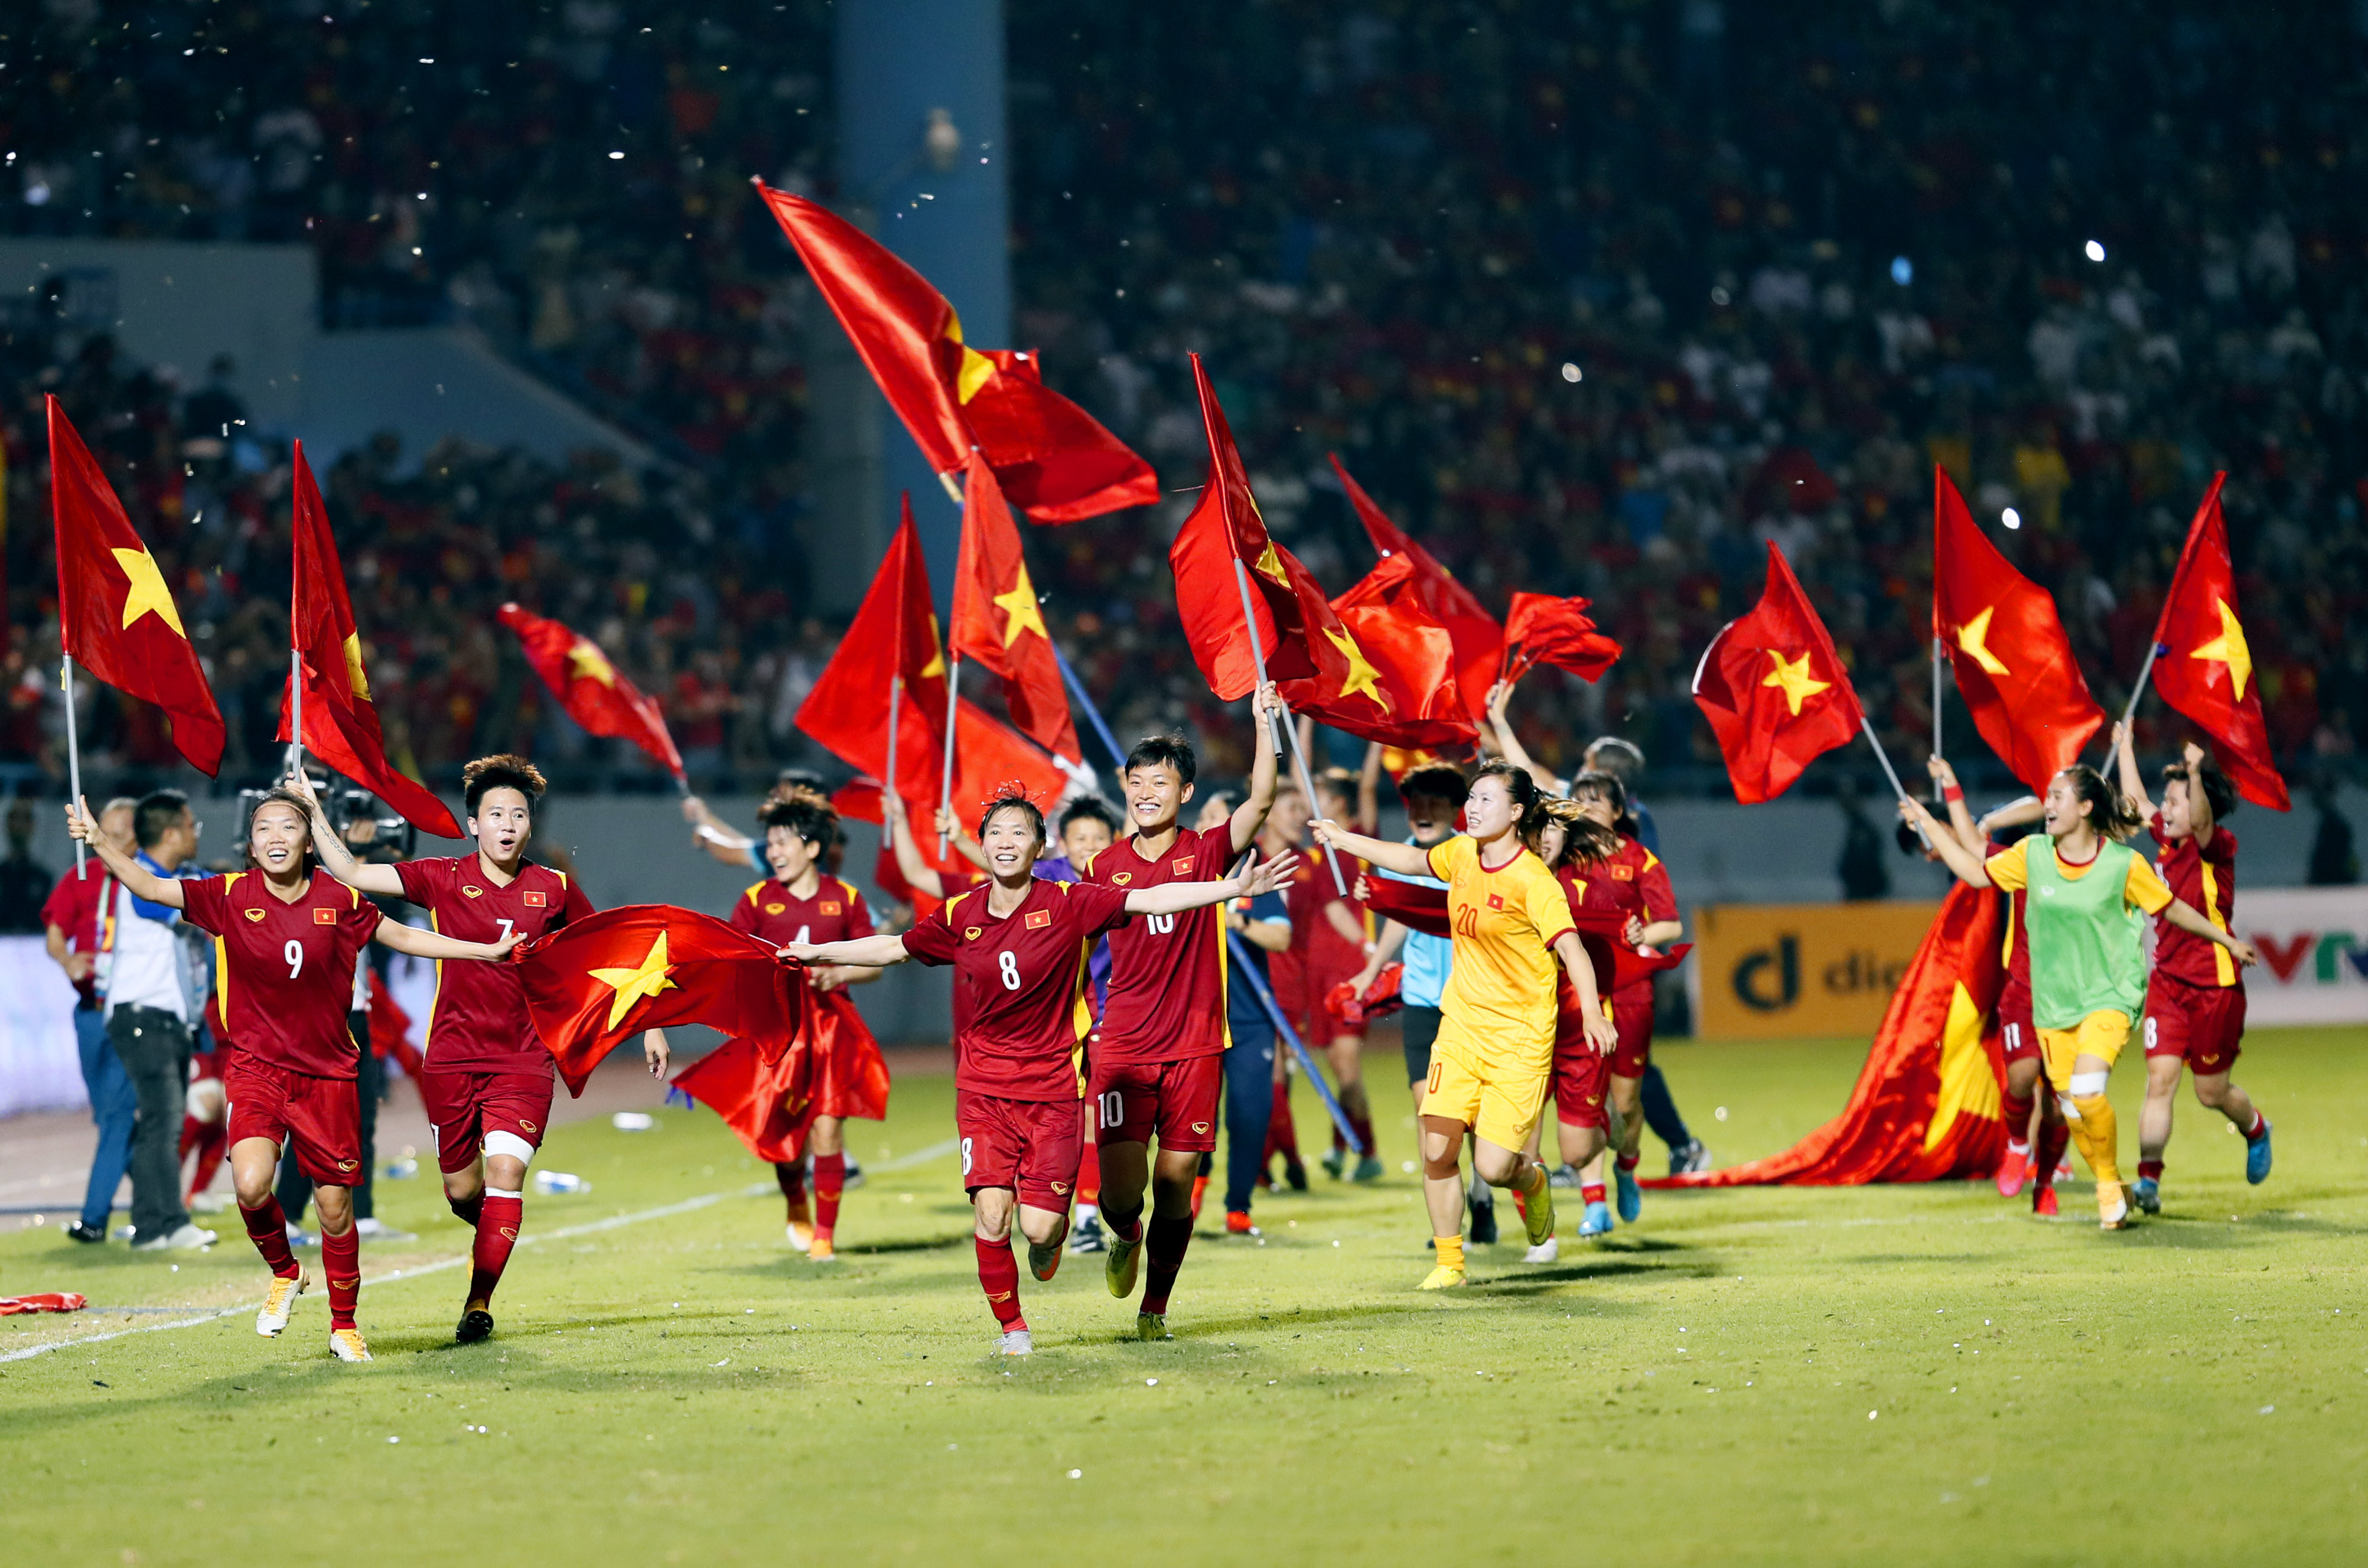 Tuyển nữ Việt Nam: Hãy để bóng đá Việt Nam ngập tràn niềm vui cùng tuyển nữ Việt Nam! Với tinh thần quyết tâm và sự đam mê bóng đá, các cô gái của chúng ta đã tạo nên những chiến thắng đầy ấn tượng. Hãy cùng ta ủng hộ và theo dõi họ trên hành trình chinh phục những thành công mới.